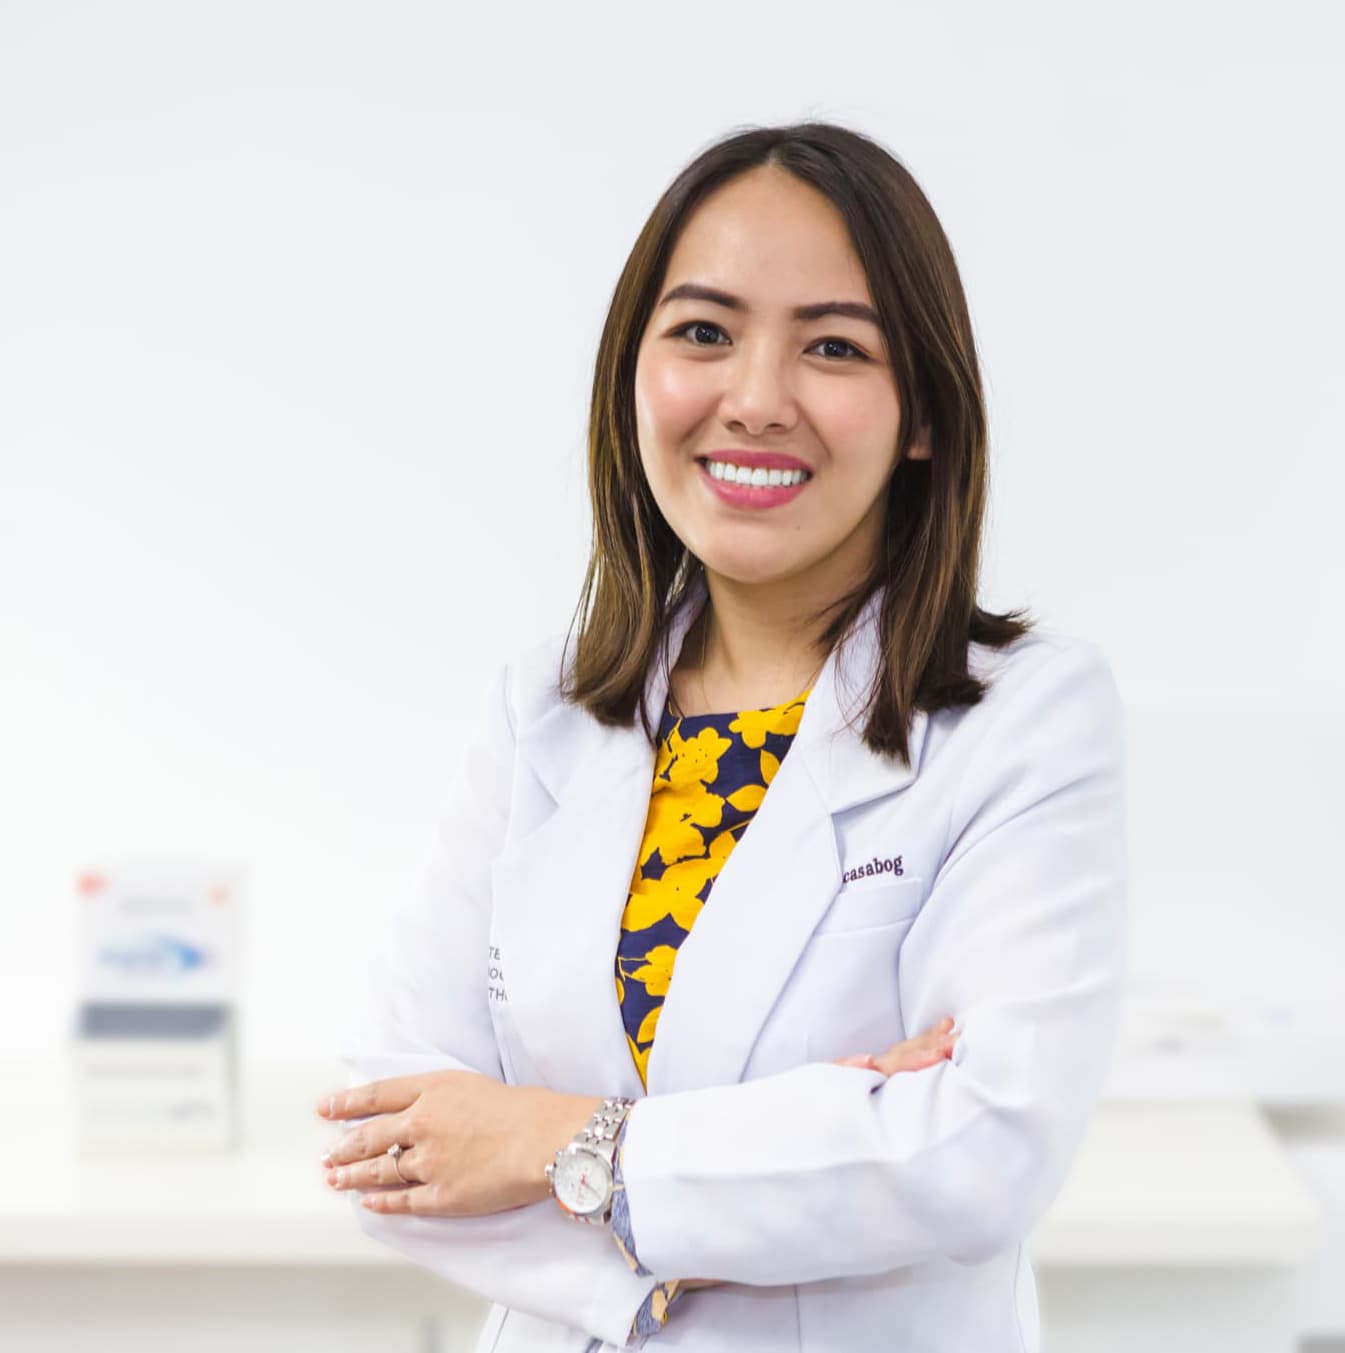 Top Filipino Dentist in Dubai - Dr. Karla